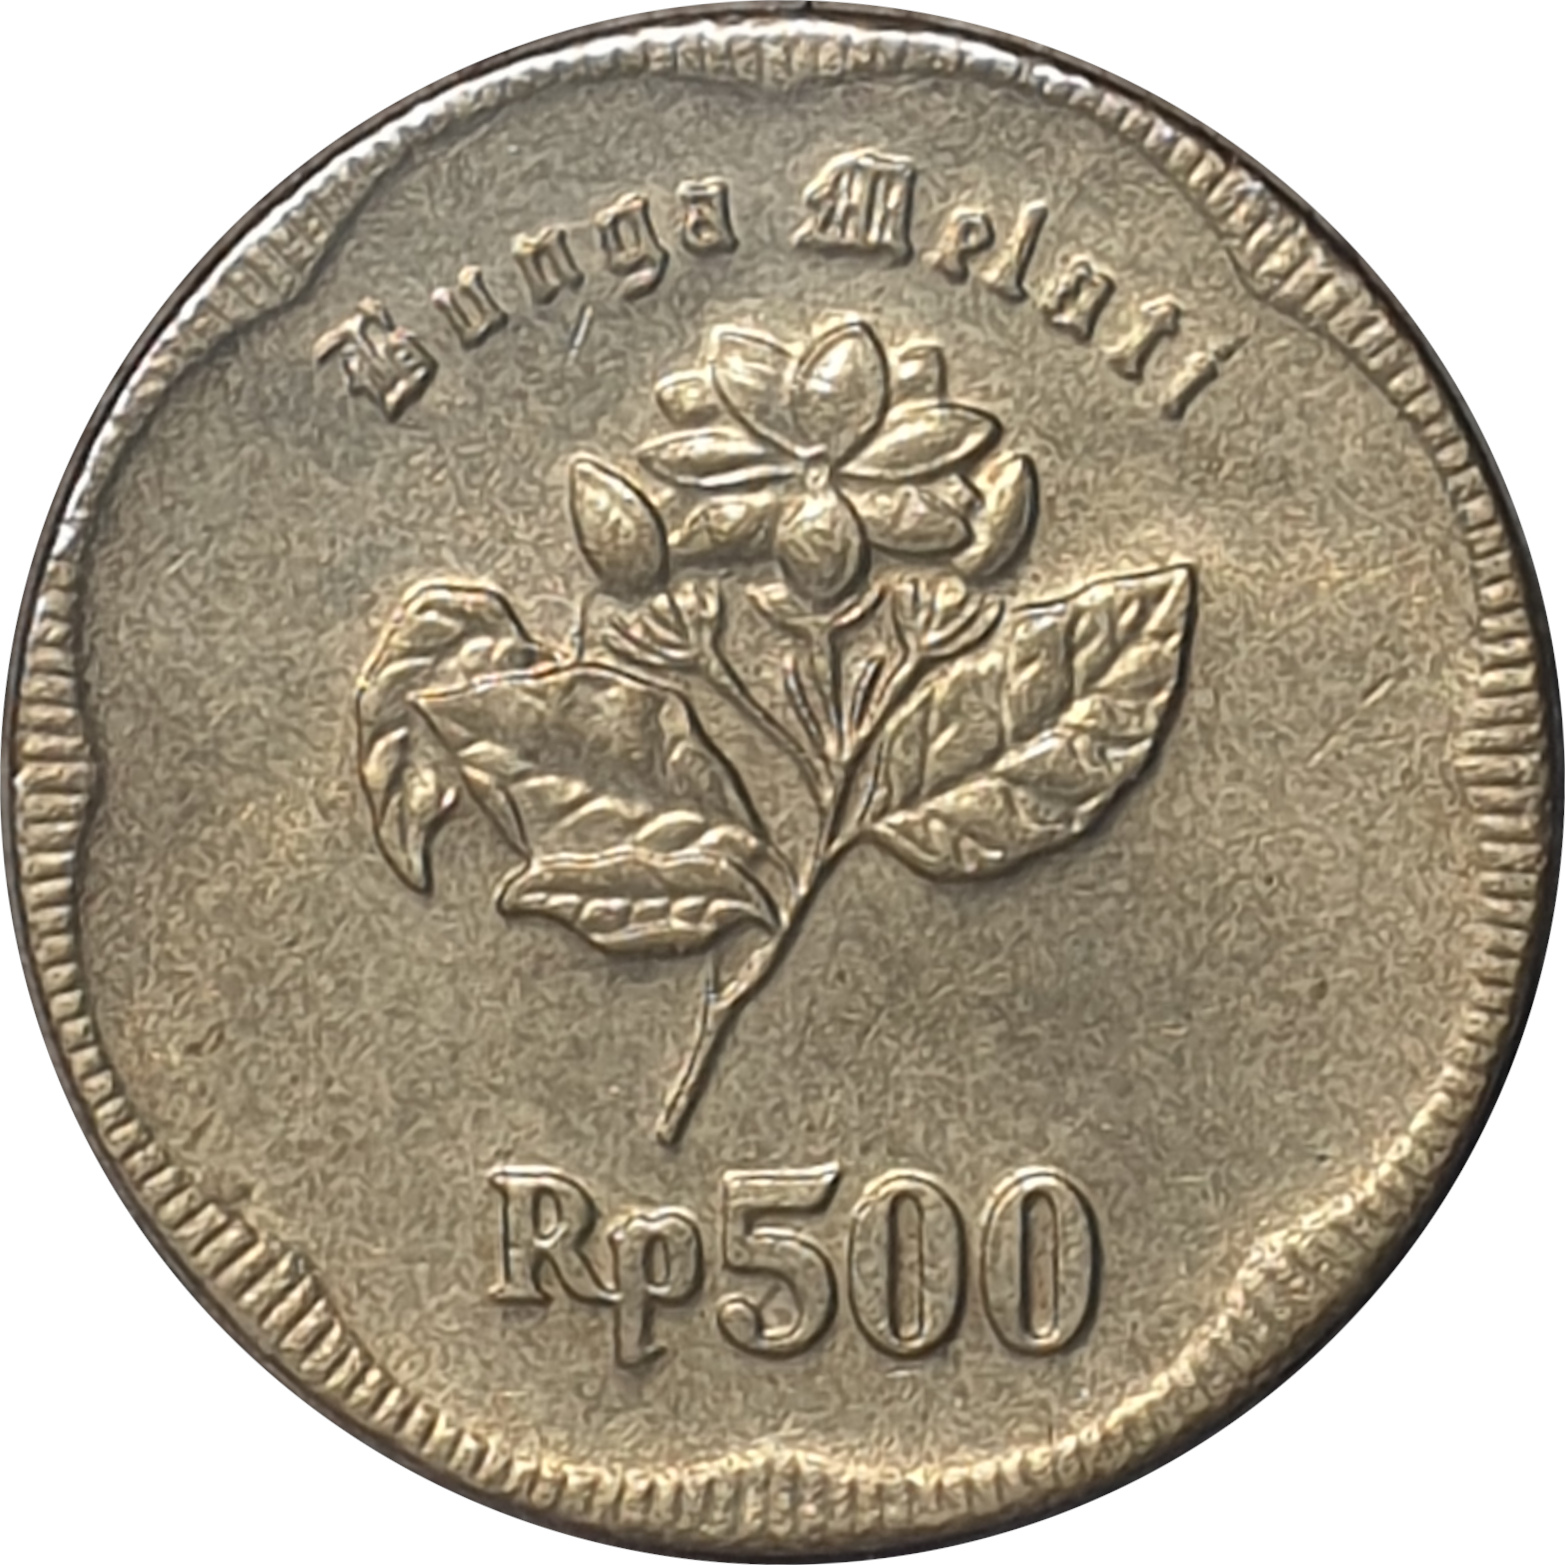 500 rupiah - Emblem - Rp500